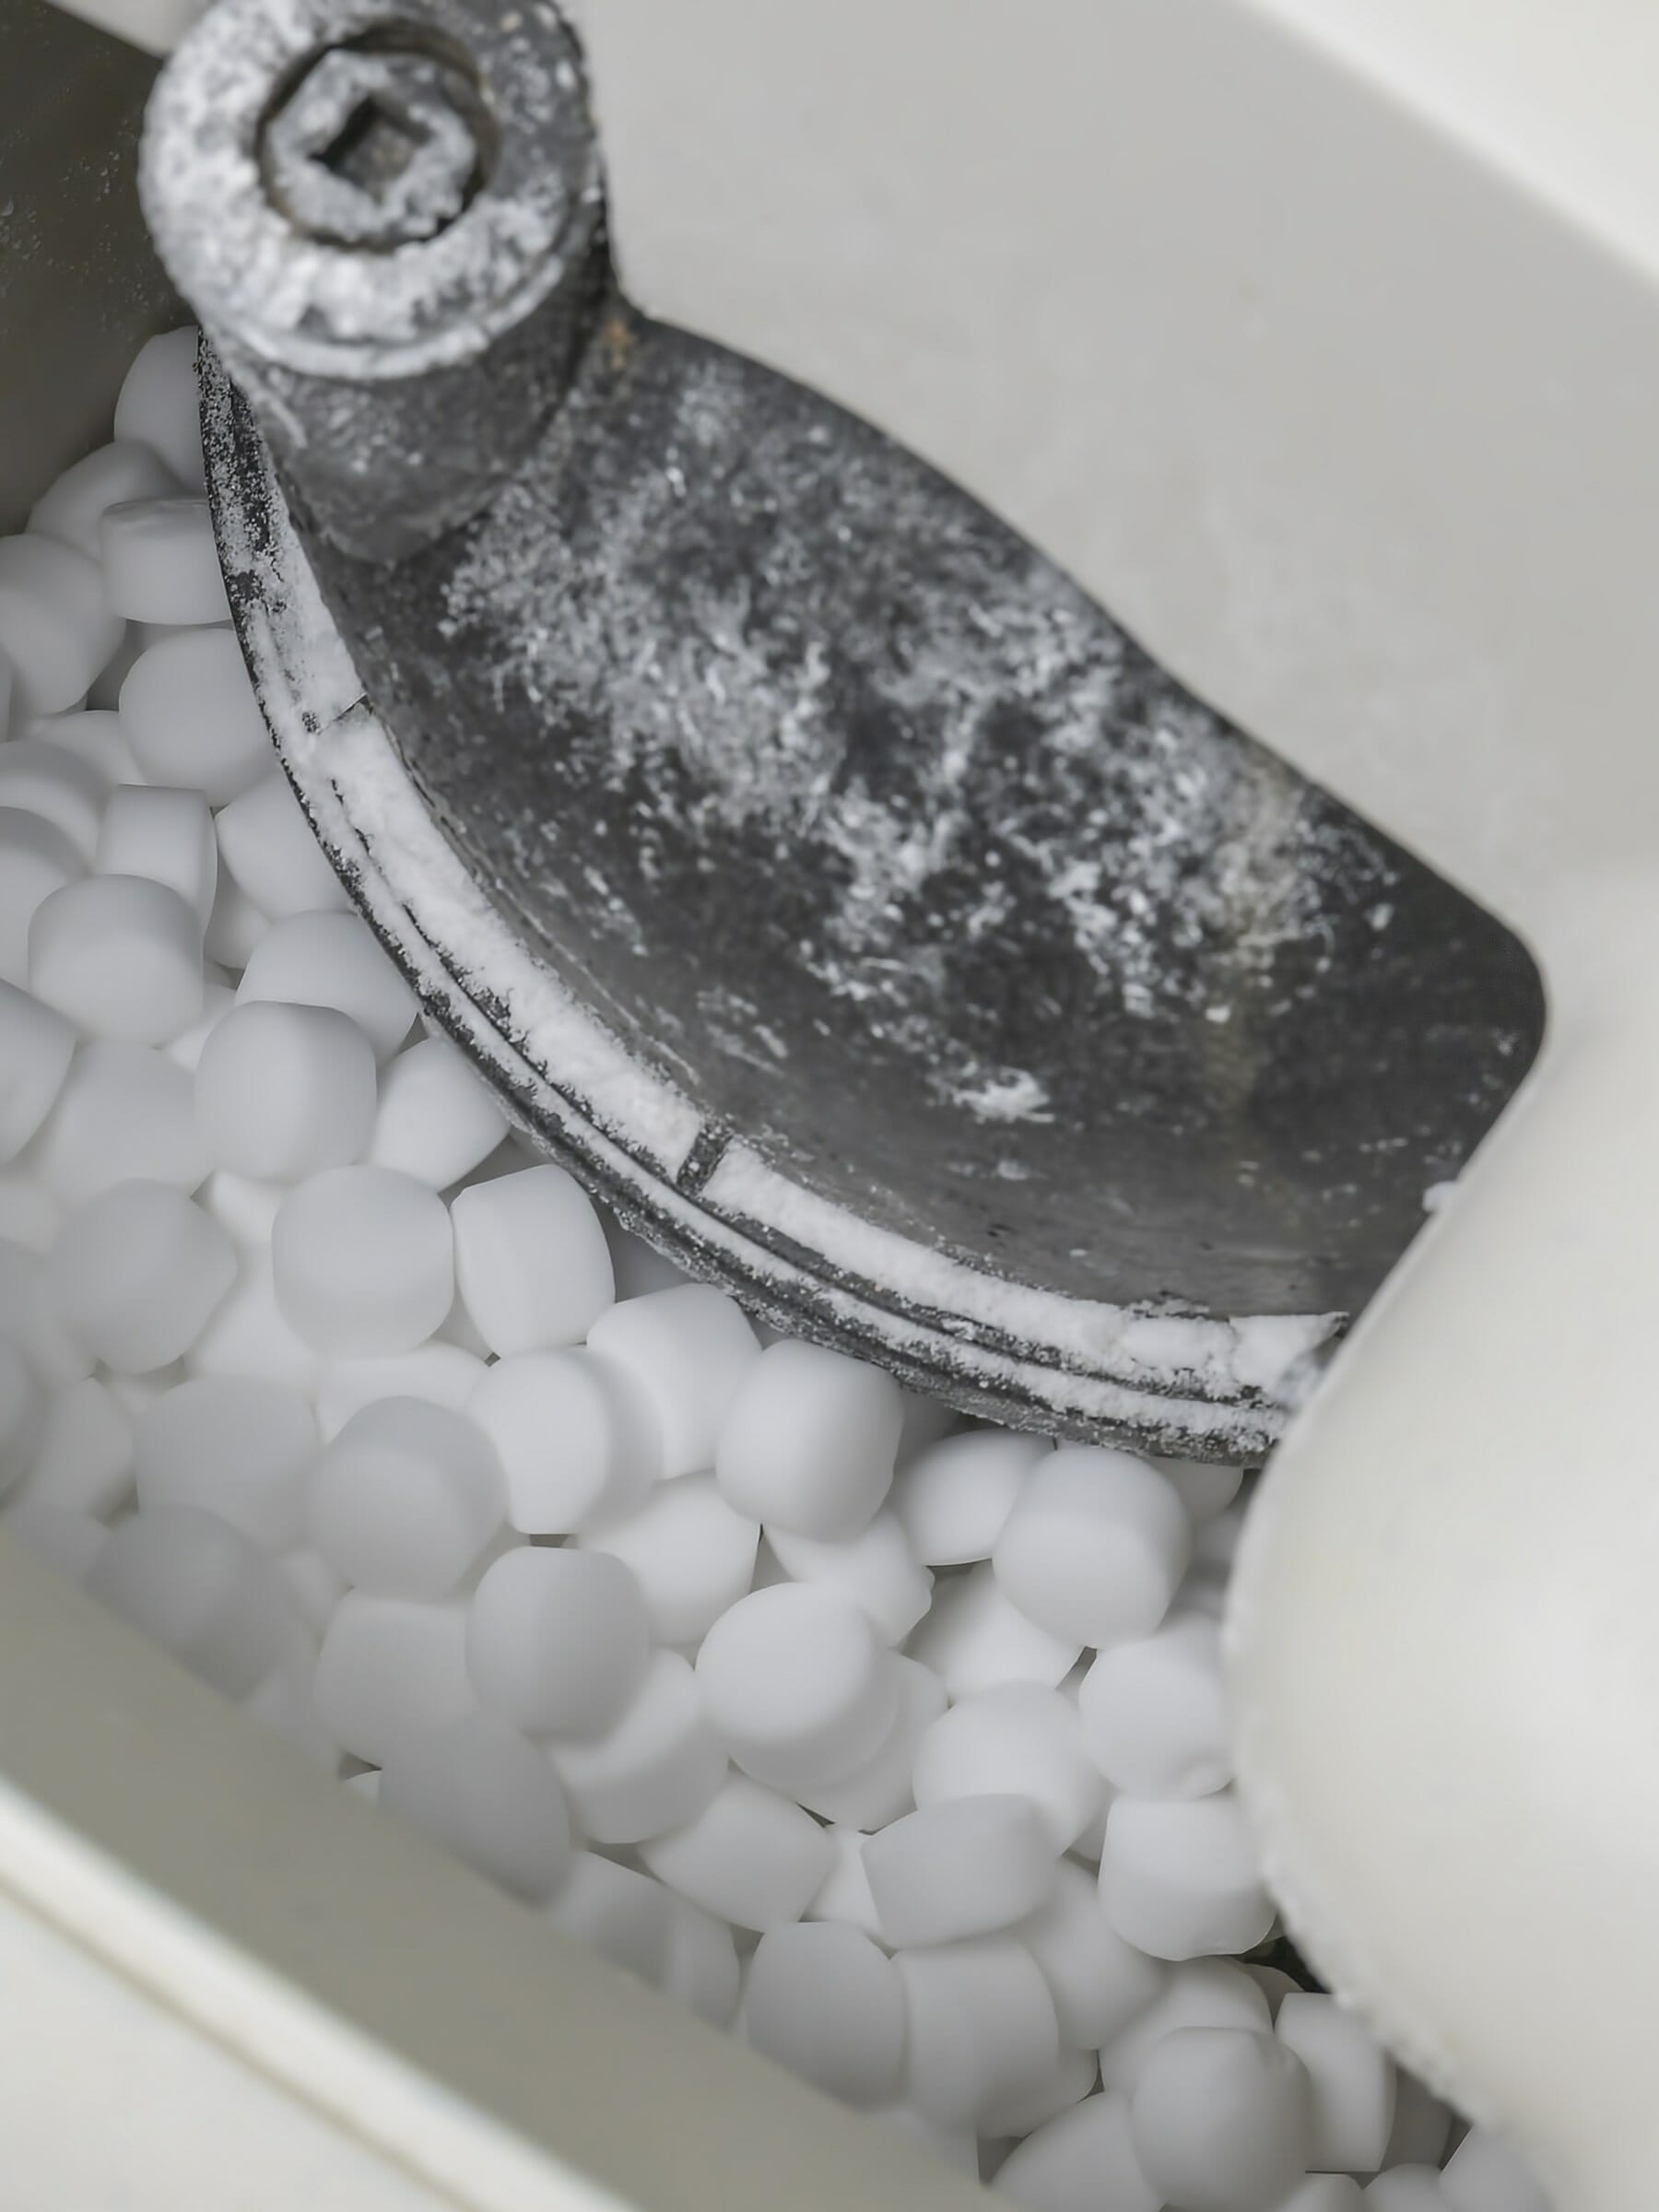 Salt pellets in a water softener